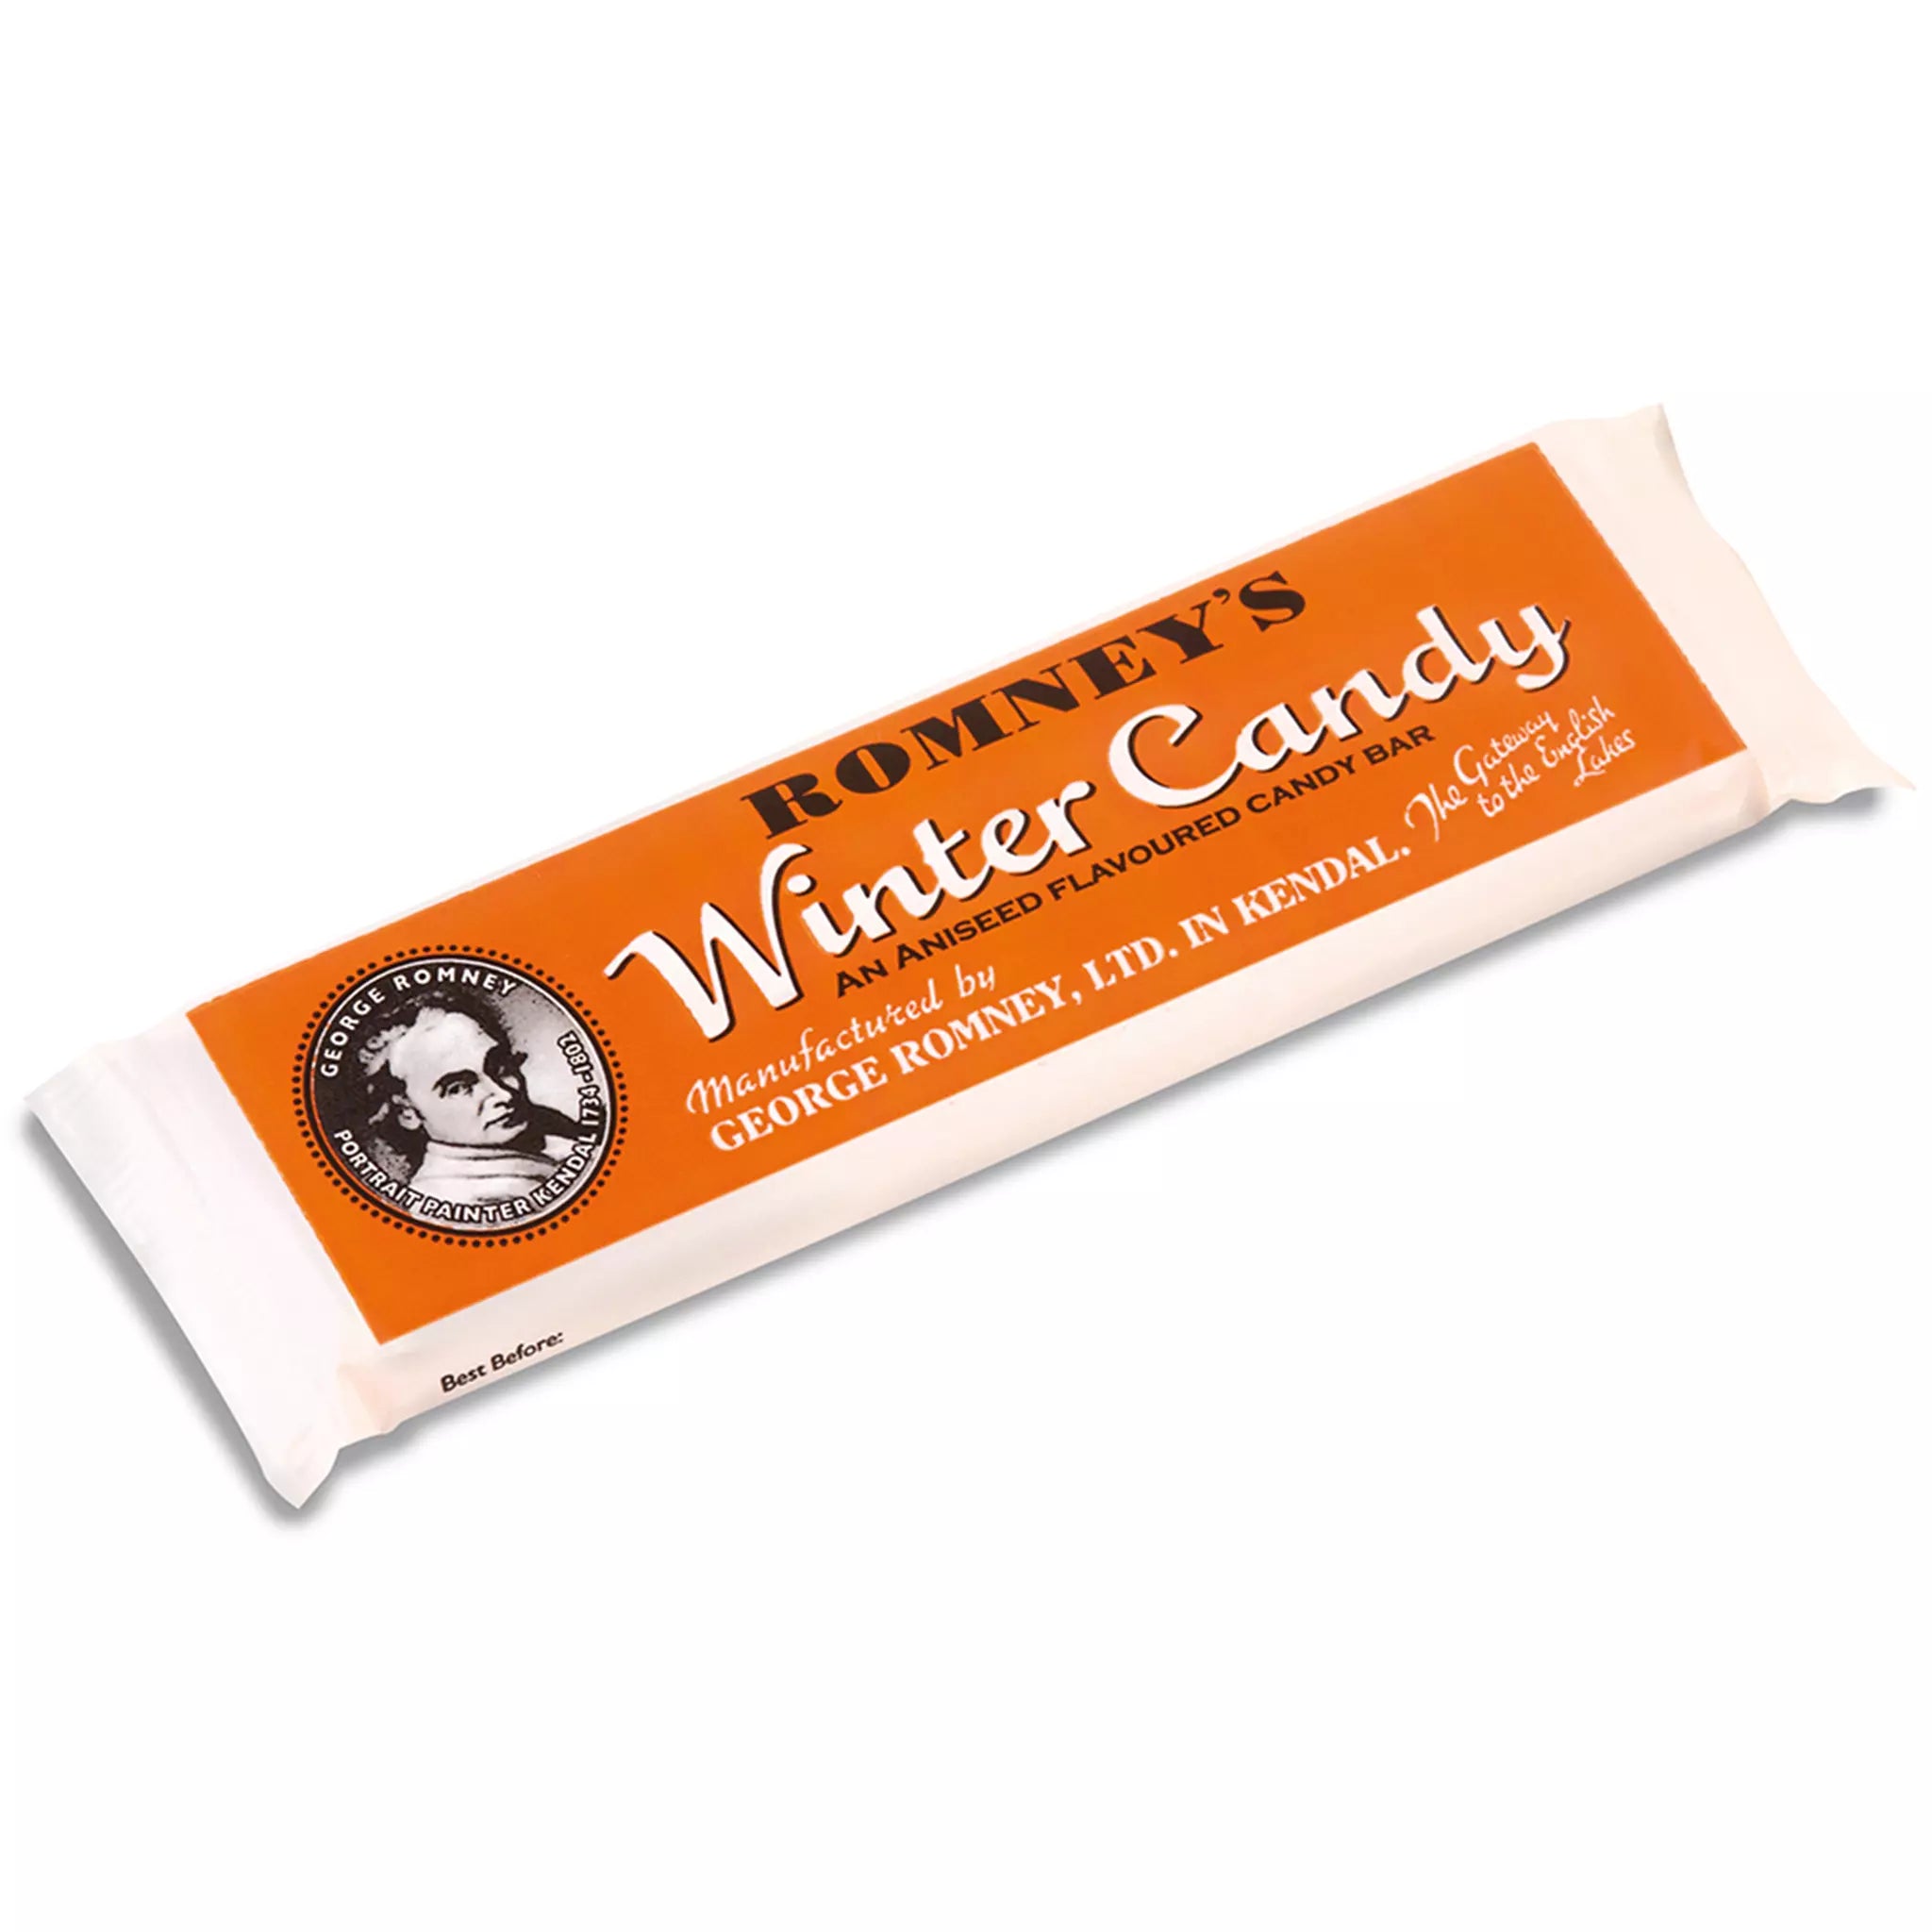 85g Winter Candy Bar